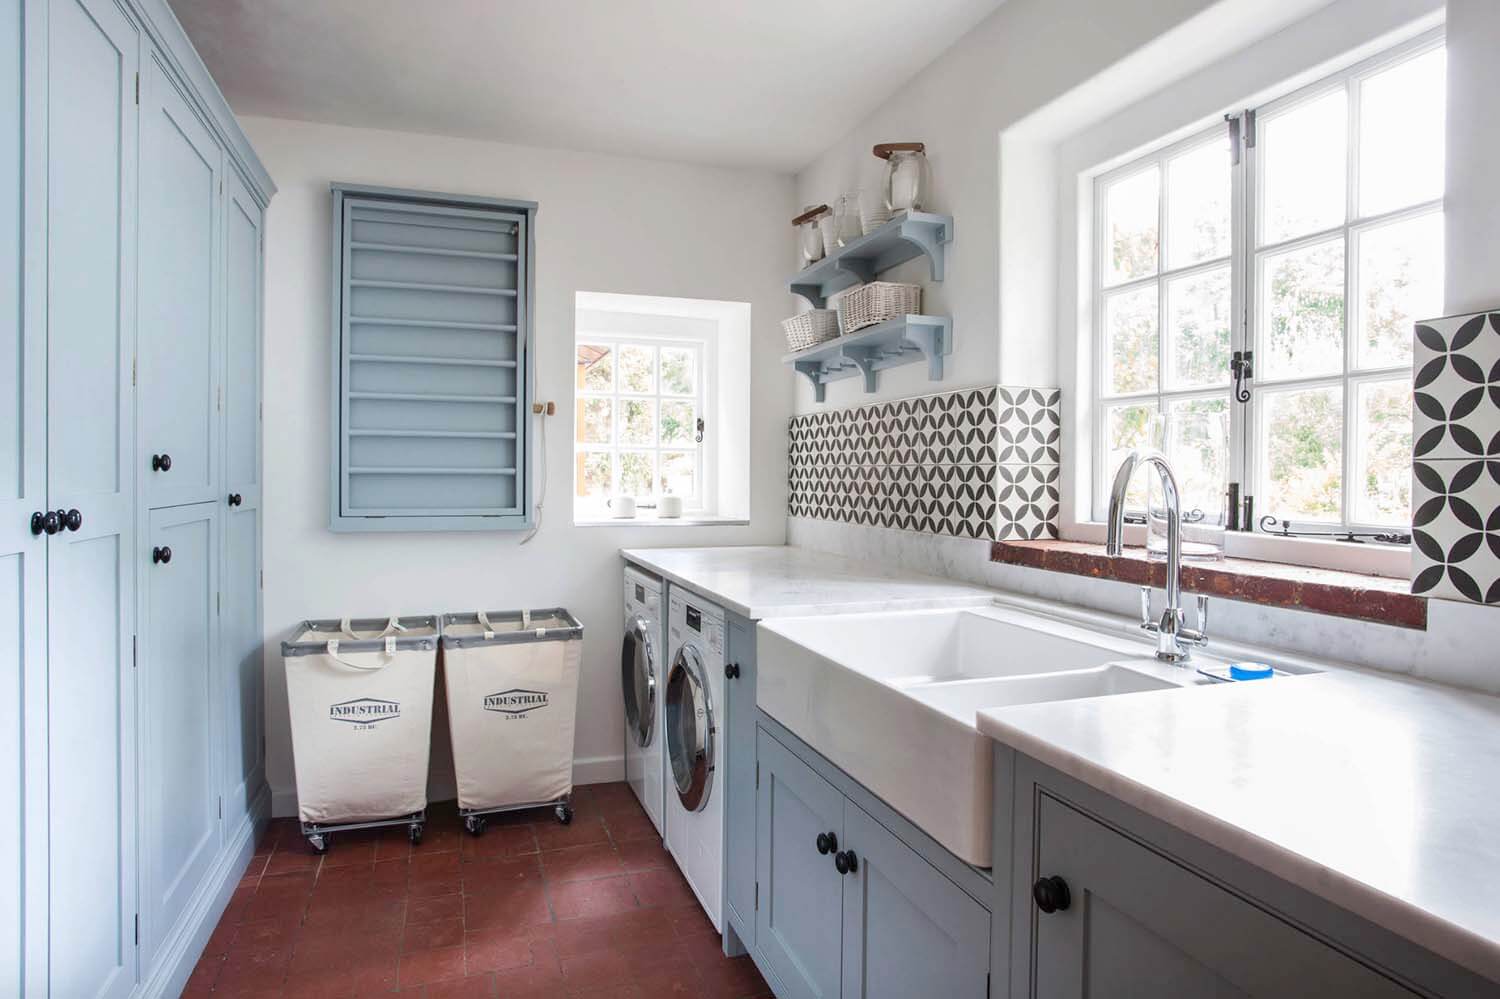 DIY Farmhouse Laundry Room Ideas: White farmhouse kitchen sink